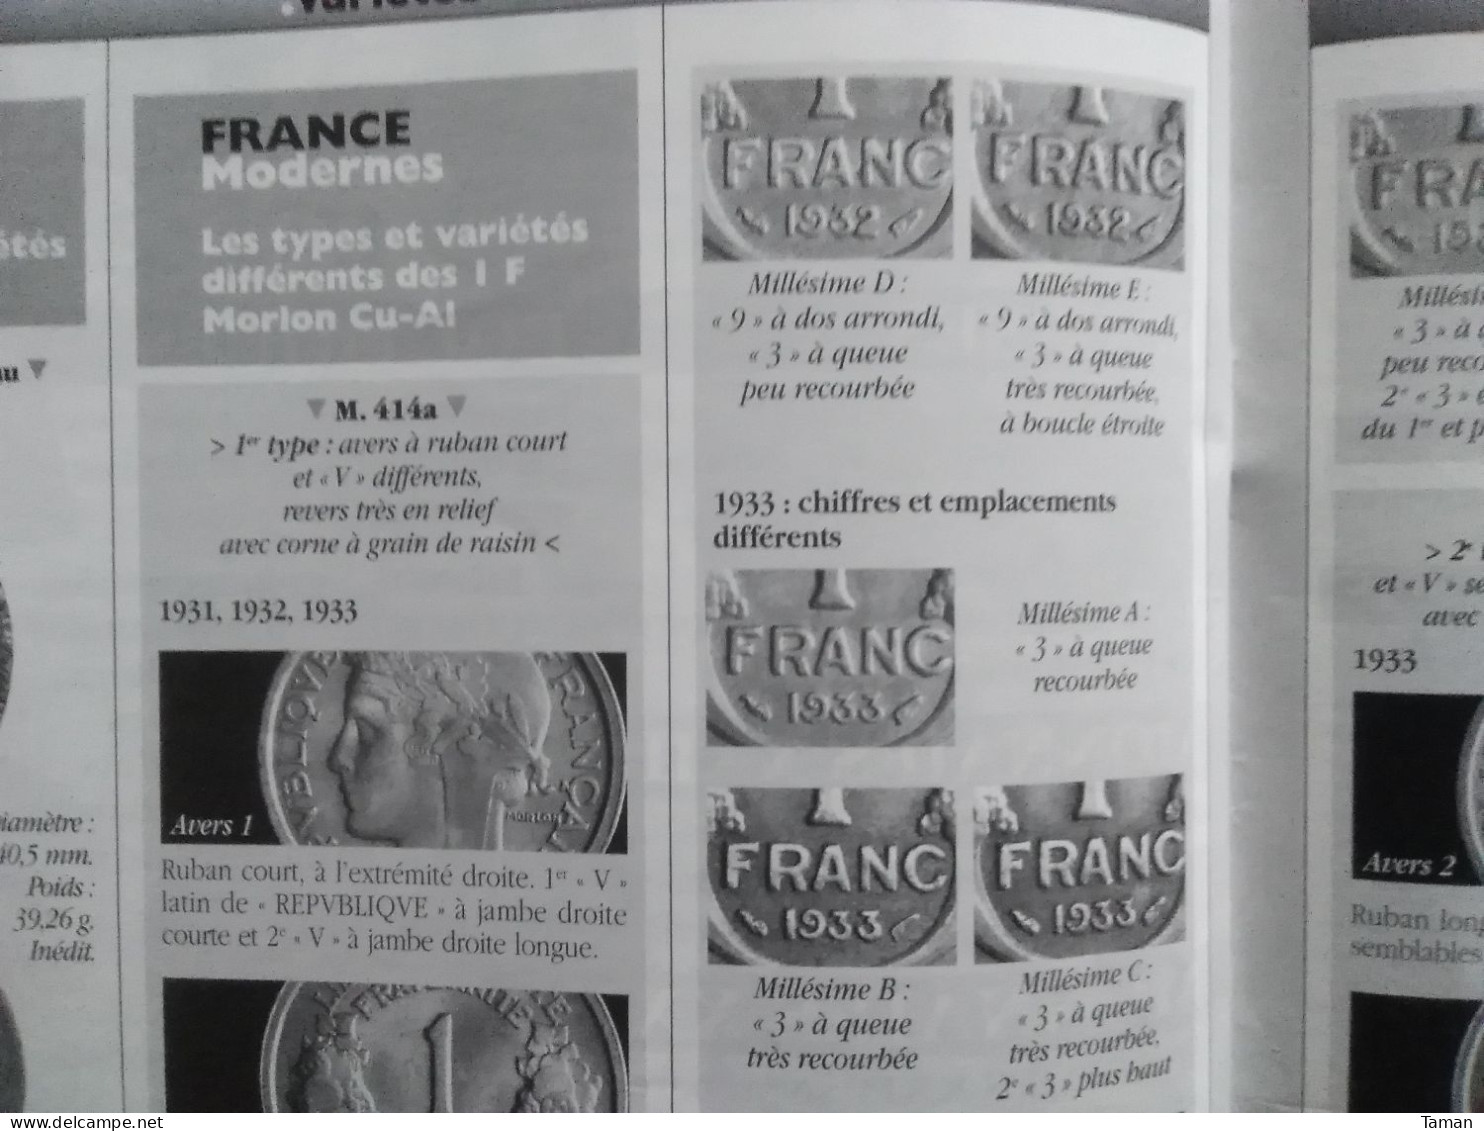 Numismatique & change - Grèce - Romaines - Régence Louis XV - Paris sous la Révolution - Morlon